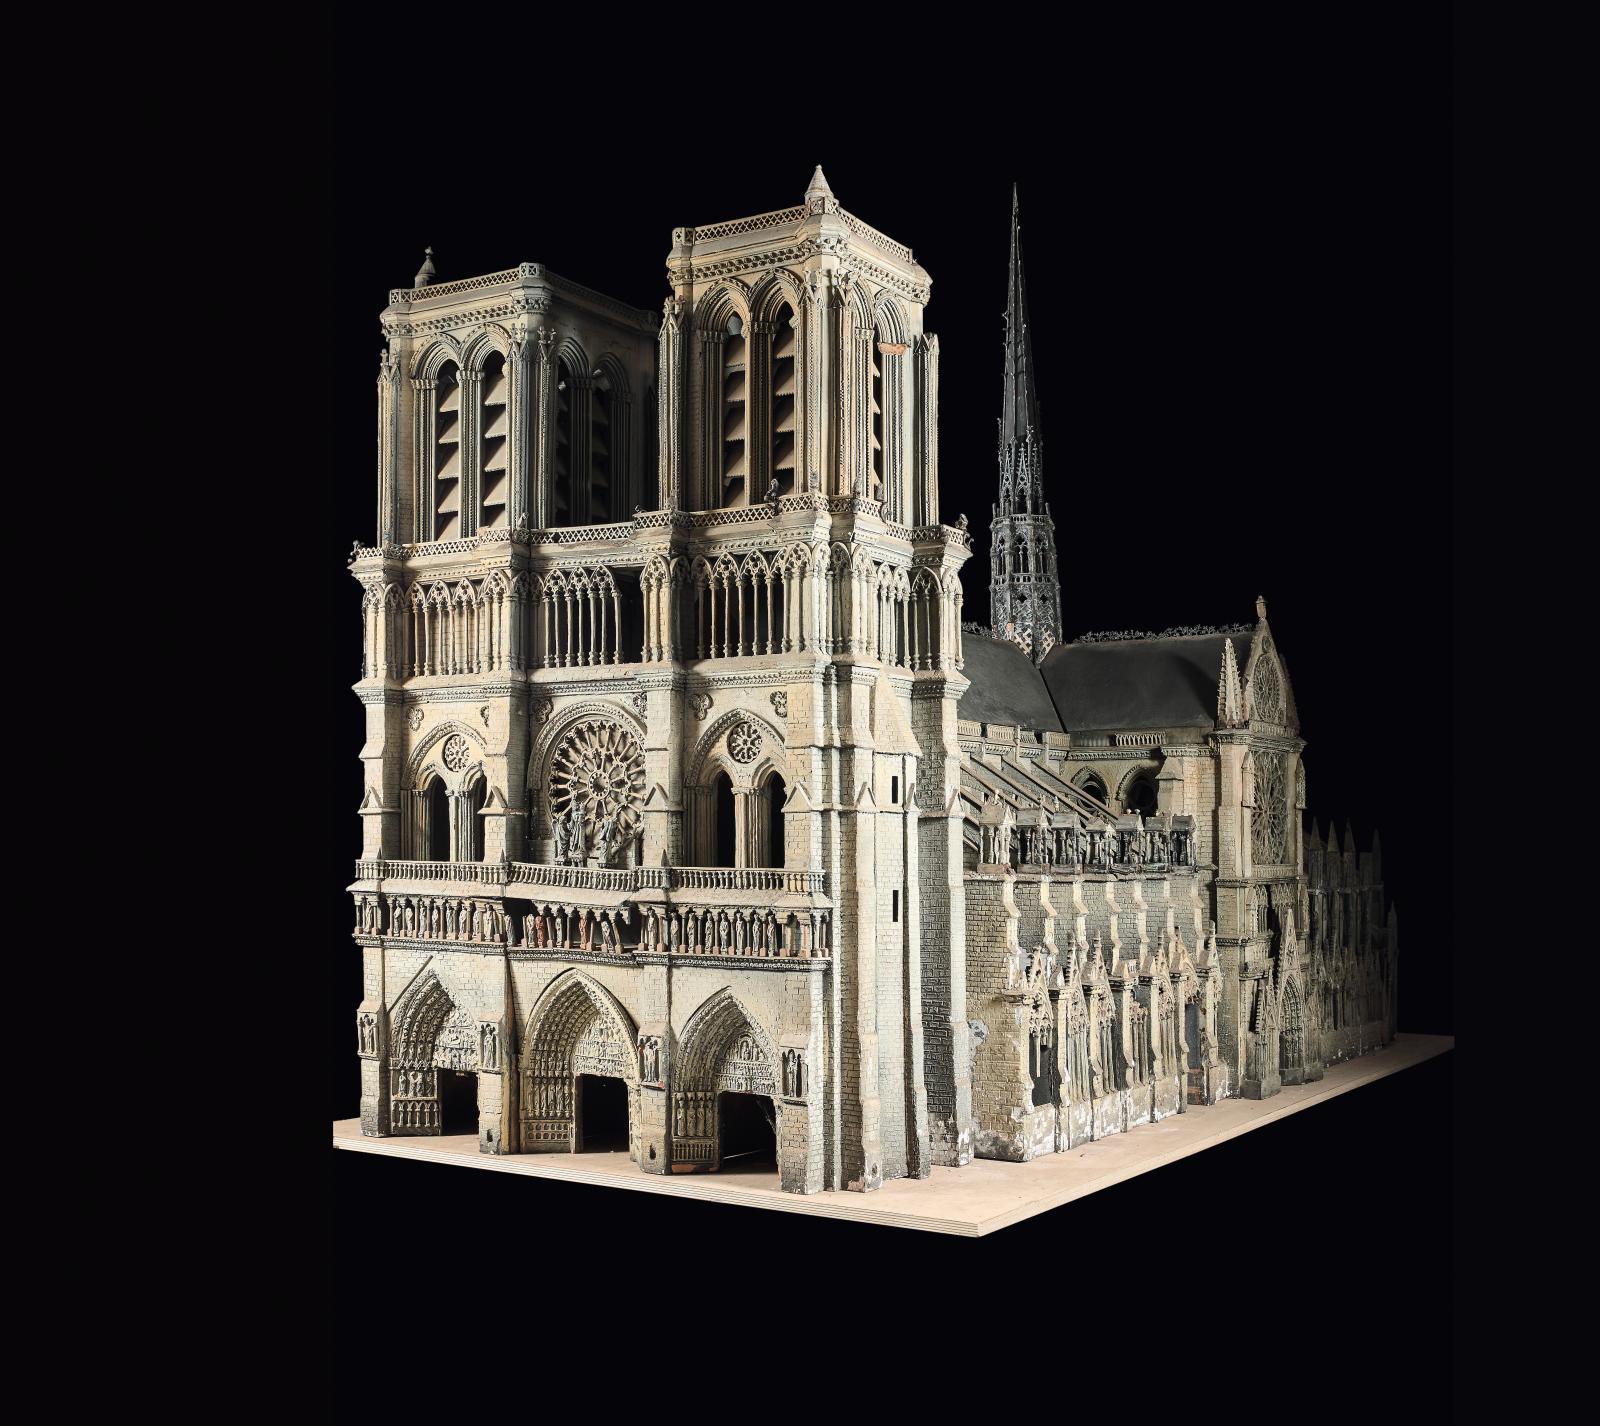 Notre-Dame, parisienne et universelle